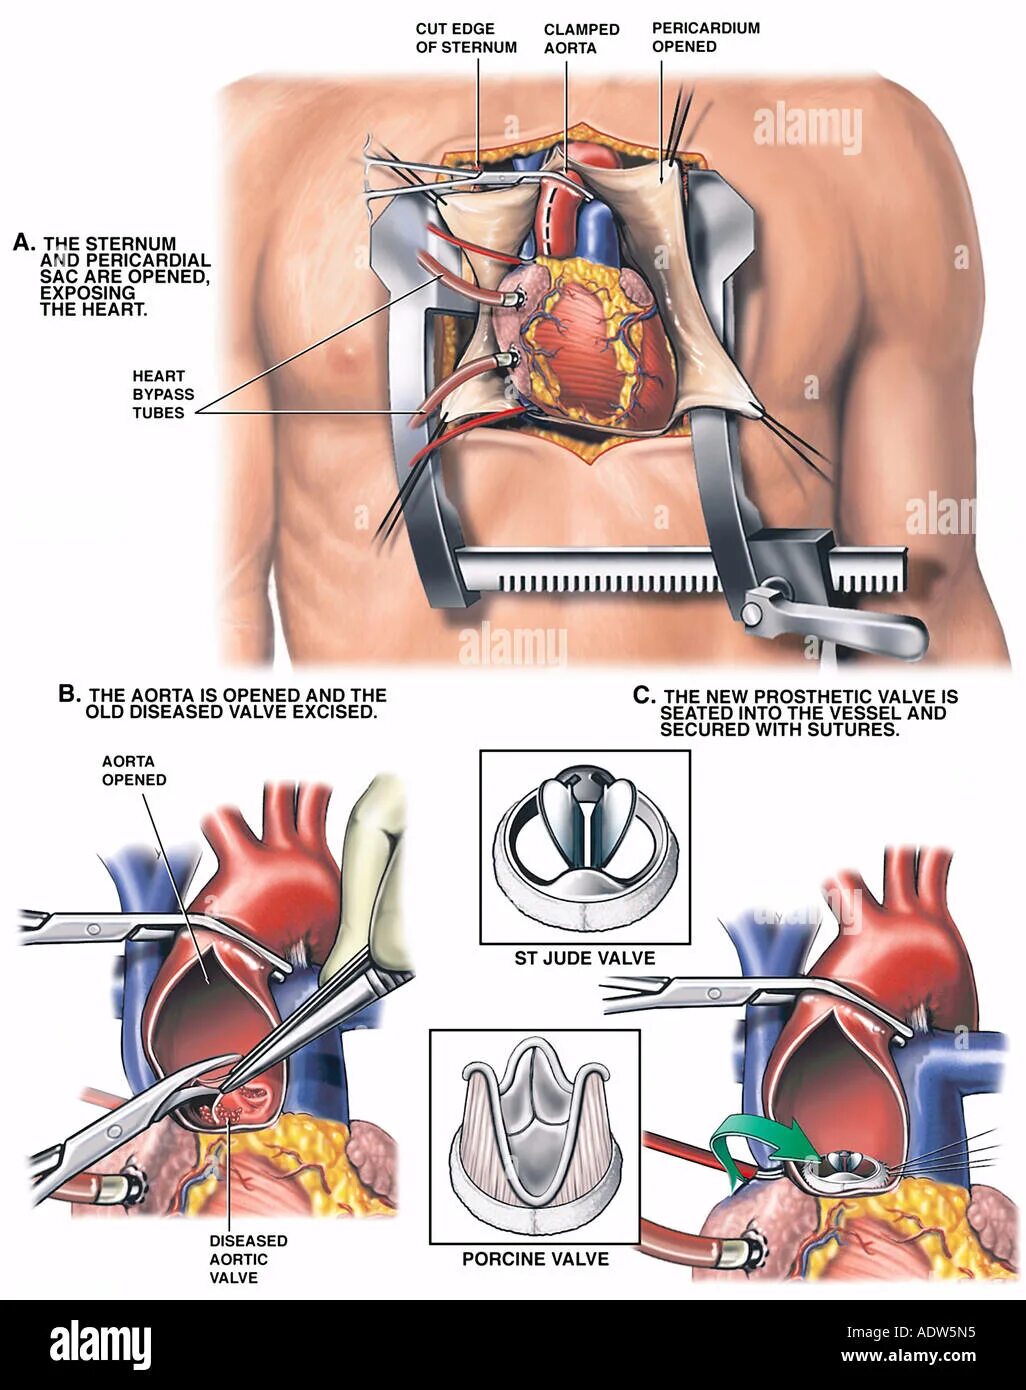 Инвалидность после замены клапана. Протезирование аортального клапана операция. Операция на сердце аортальный клапан. Операции на о крытом сердце. Операция на сердце замена клапана.